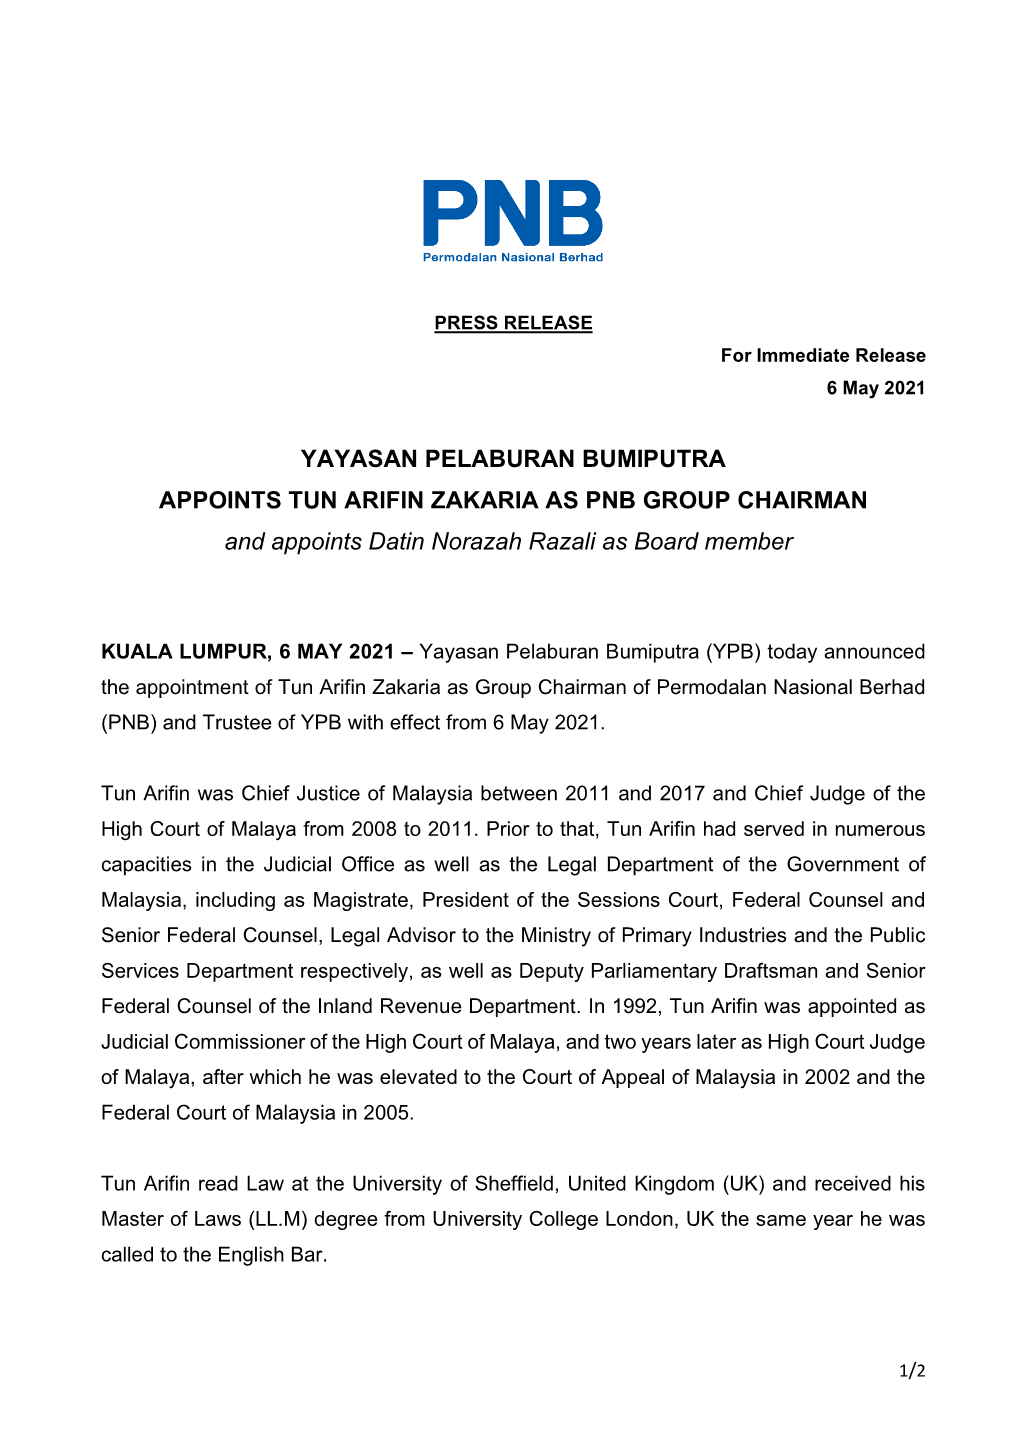 YAYASAN PELABURAN BUMIPUTRA APPOINTS TUN ARIFIN ZAKARIA AS PNB GROUP CHAIRMAN and Appoints Datin Norazah Razali As Board Member